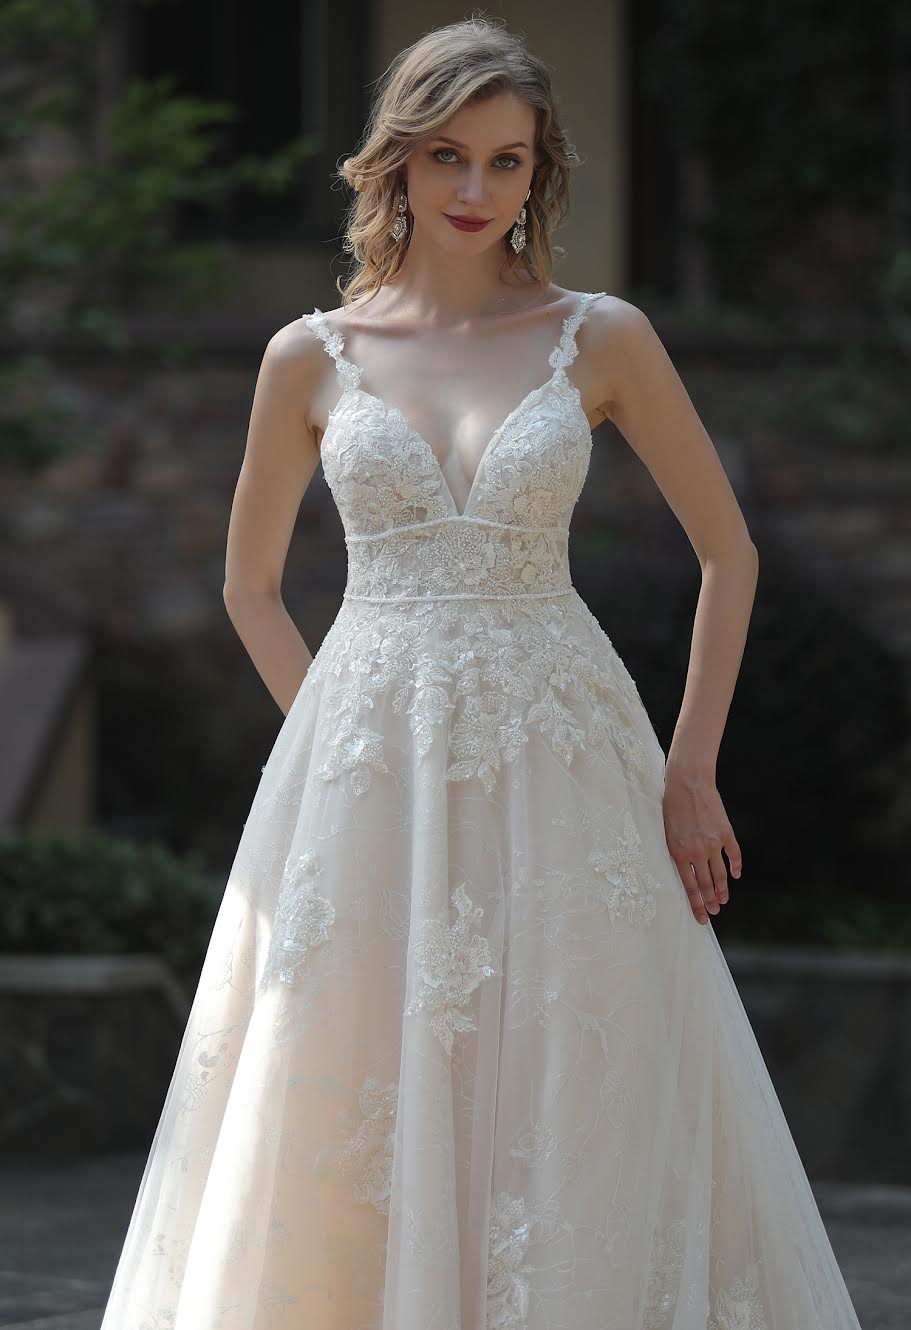 Maleny Wedding Dress